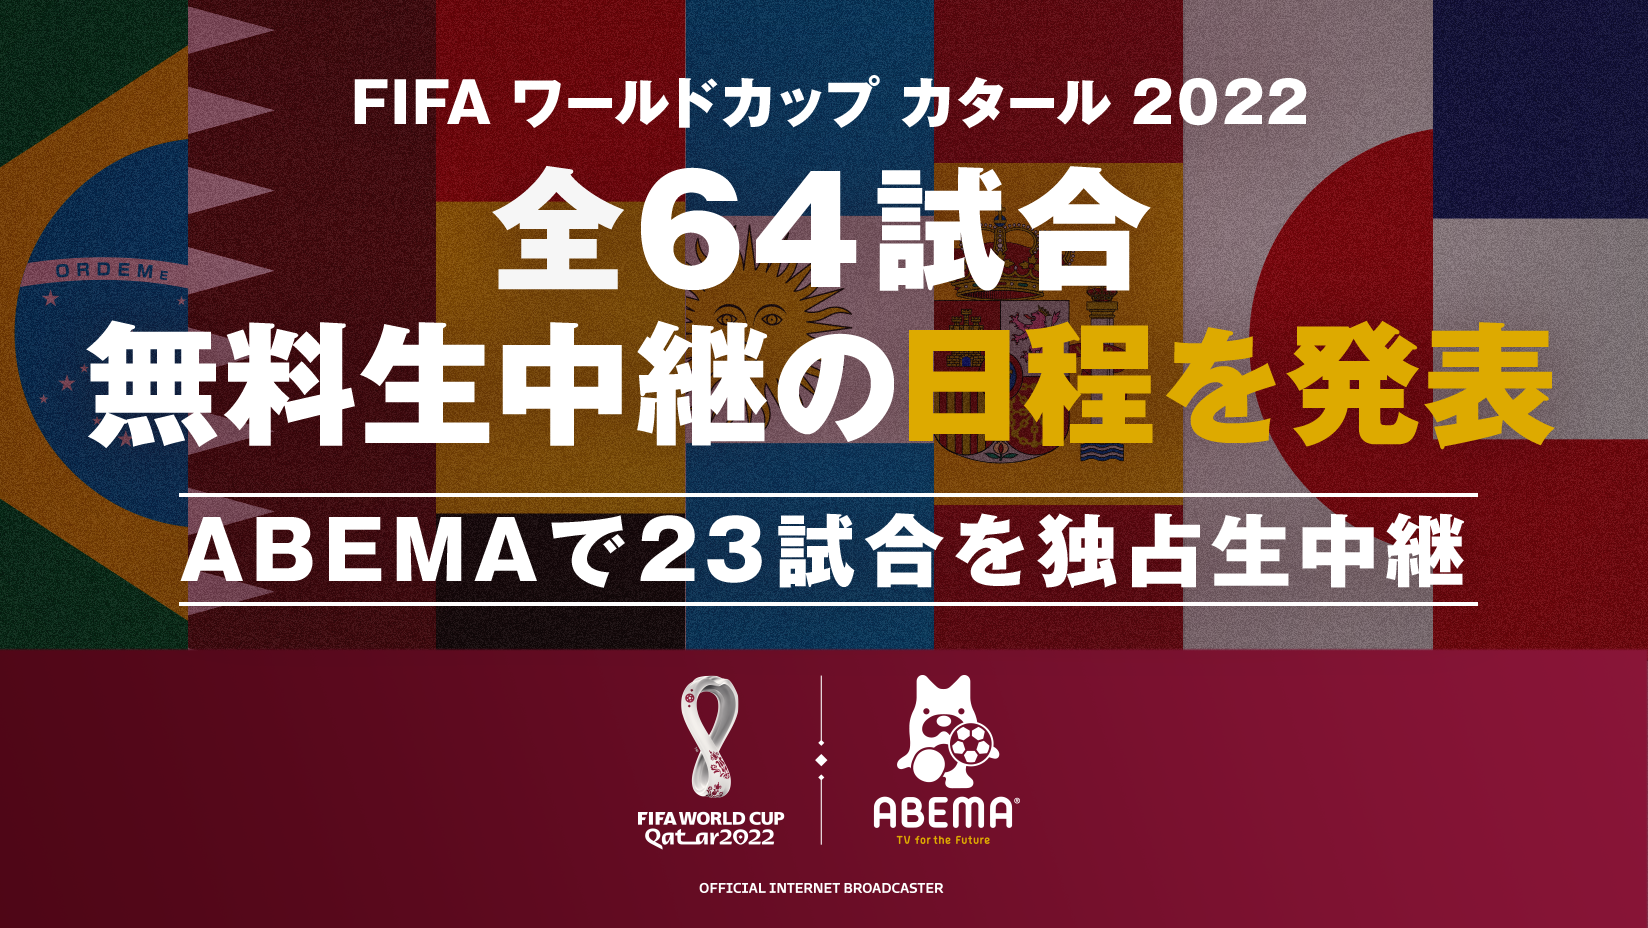 新しい未来のテレビ Abema 11月21日より開幕する Fifa ワールドカップ カタール 22 全64試合無料生中継の日程を発表 株式会社サイバーエージェント